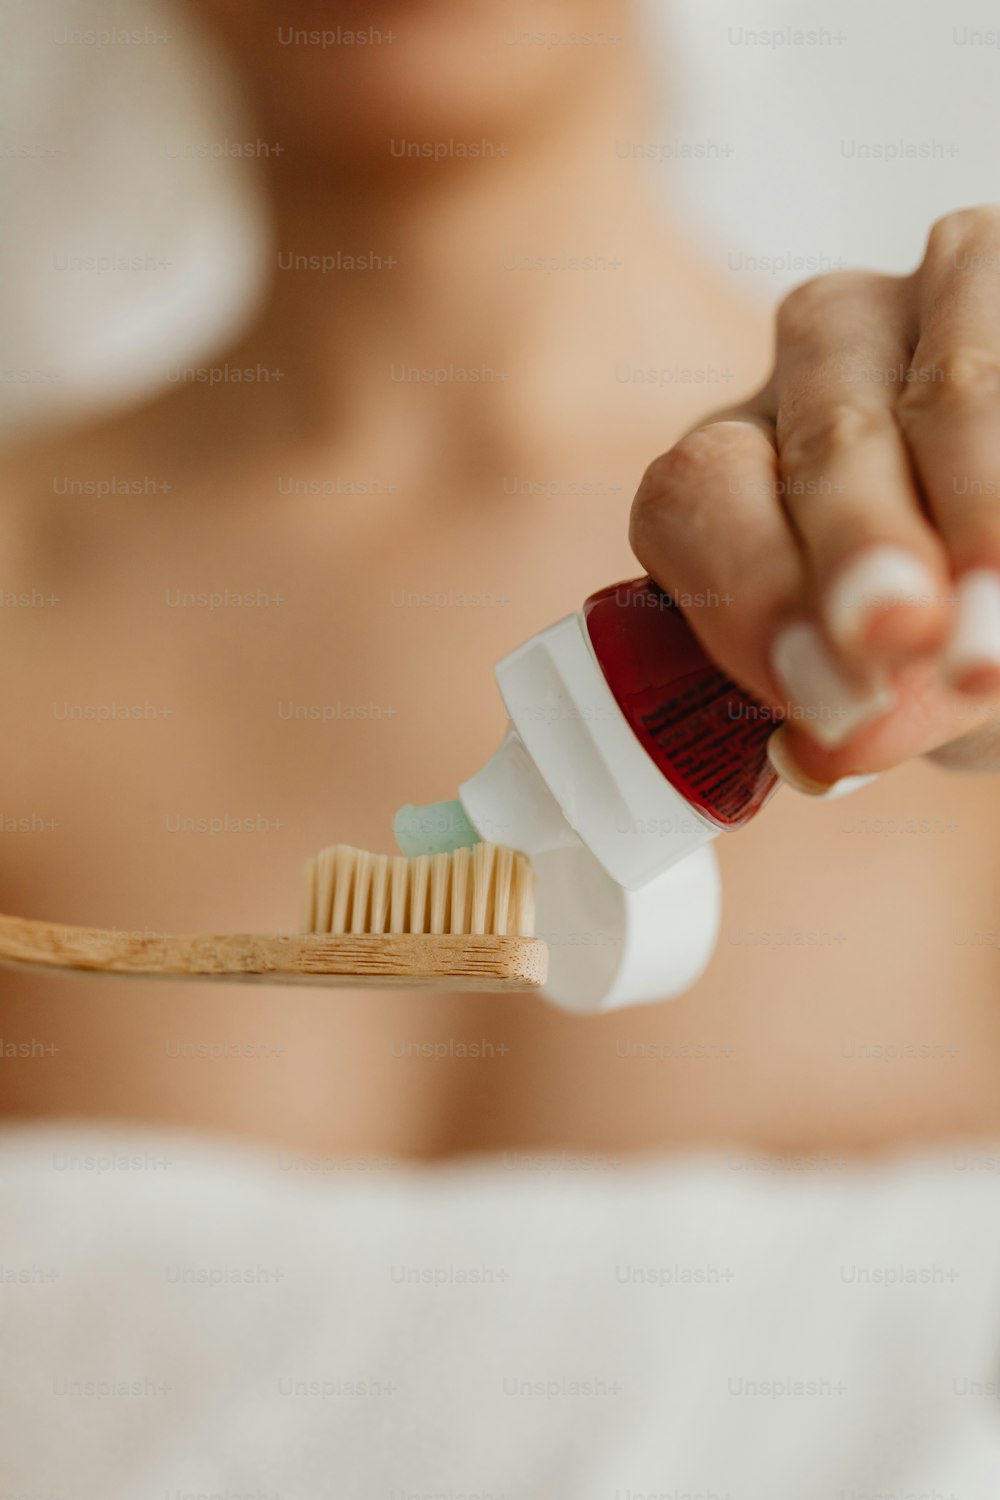 Un primer plano de una persona sosteniendo un cepillo de dientes